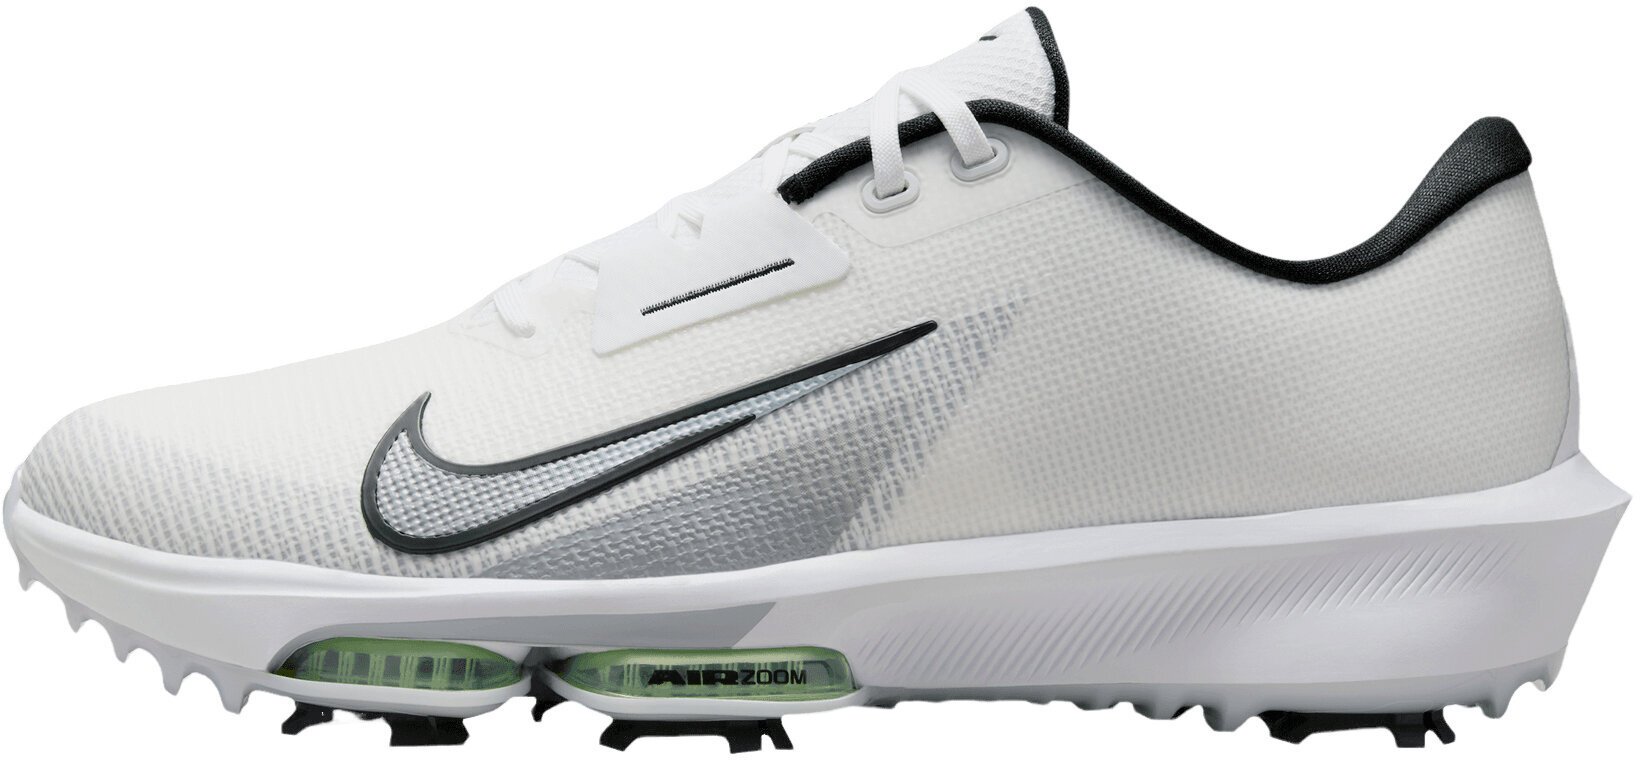 Calzado de golf para hombres Nike Air Zoom Infinity Tour Next 2 Unisex Golf Shoes White/Black/Vapor Green/Pure Platinum 45 Calzado de golf para hombres